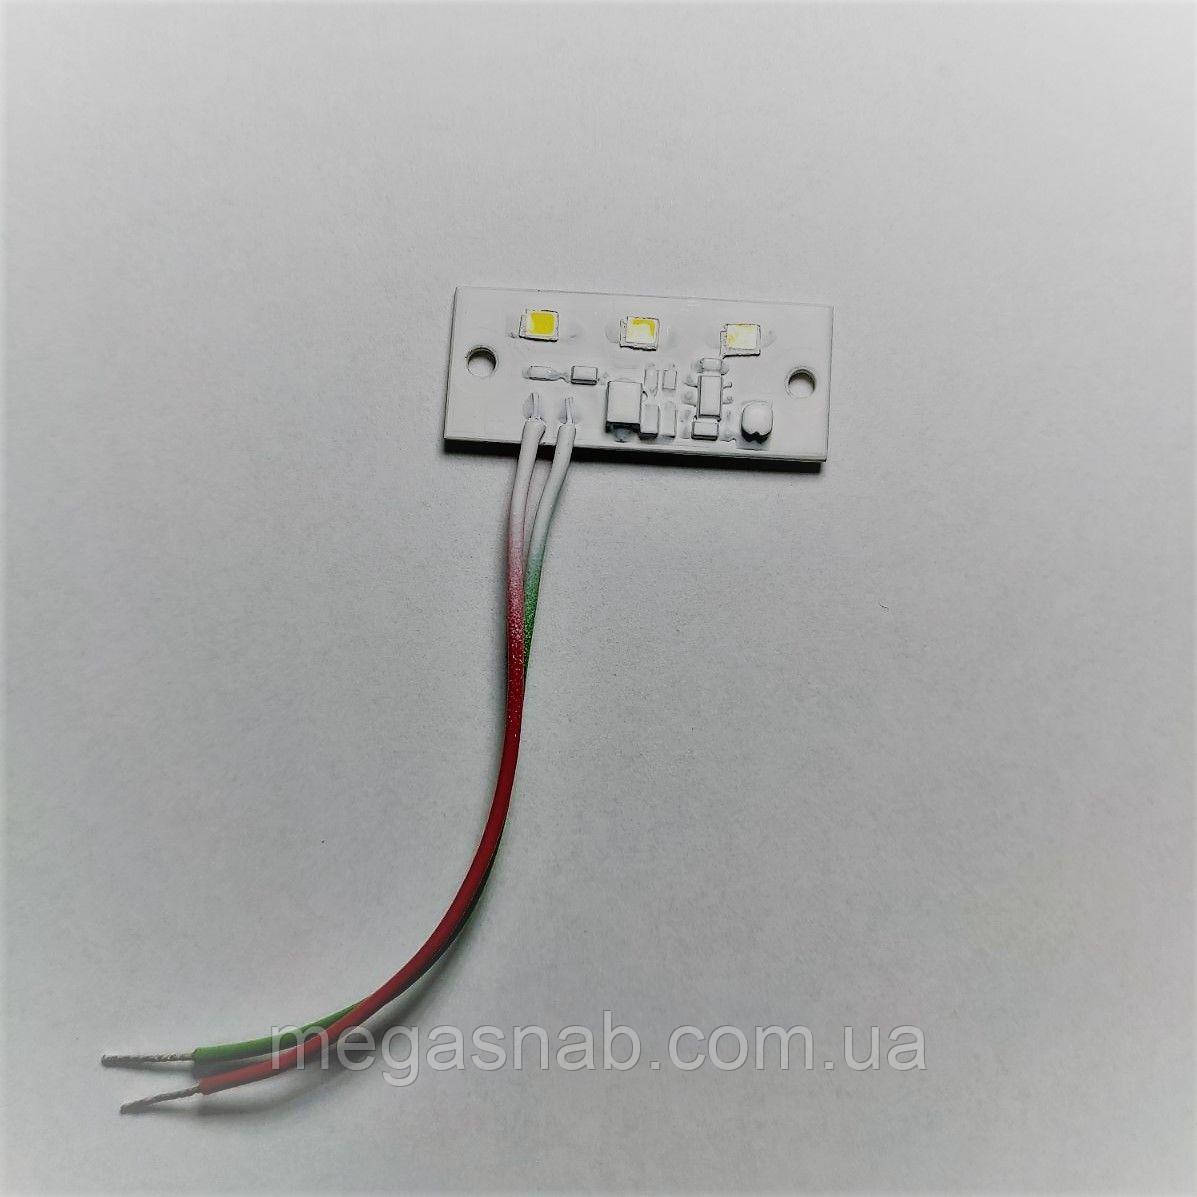 LED модуль M-LED3 DC12-24V-40*16-IP67 1.5W  200Lm (40*16мм)